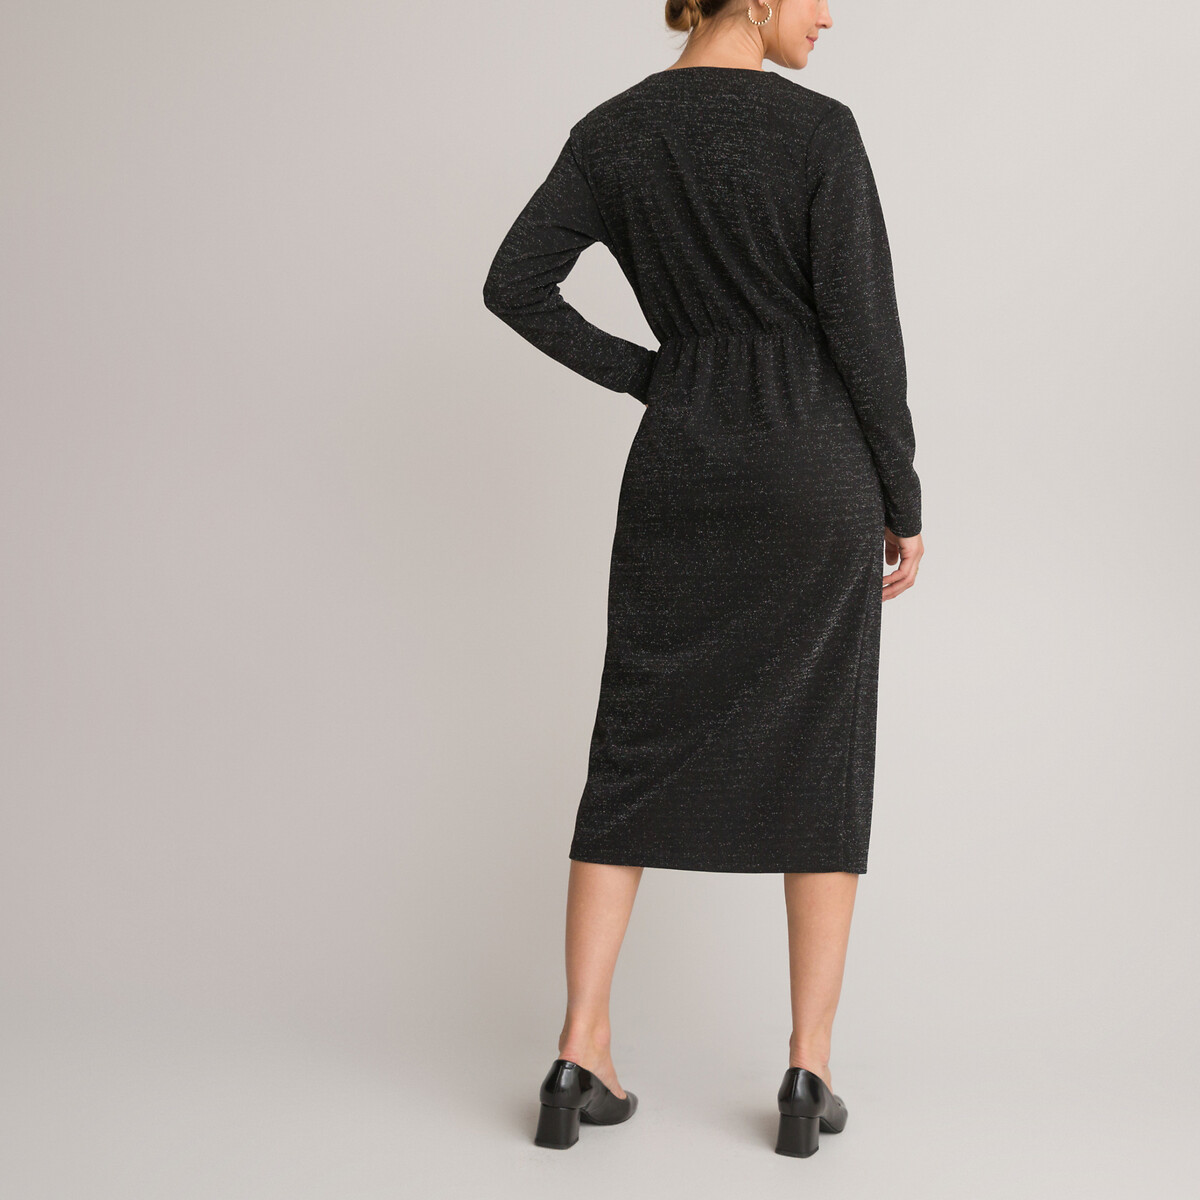 Платье-миди С запахом длинные рукава 54 черный LaRedoute, размер 54 - фото 4